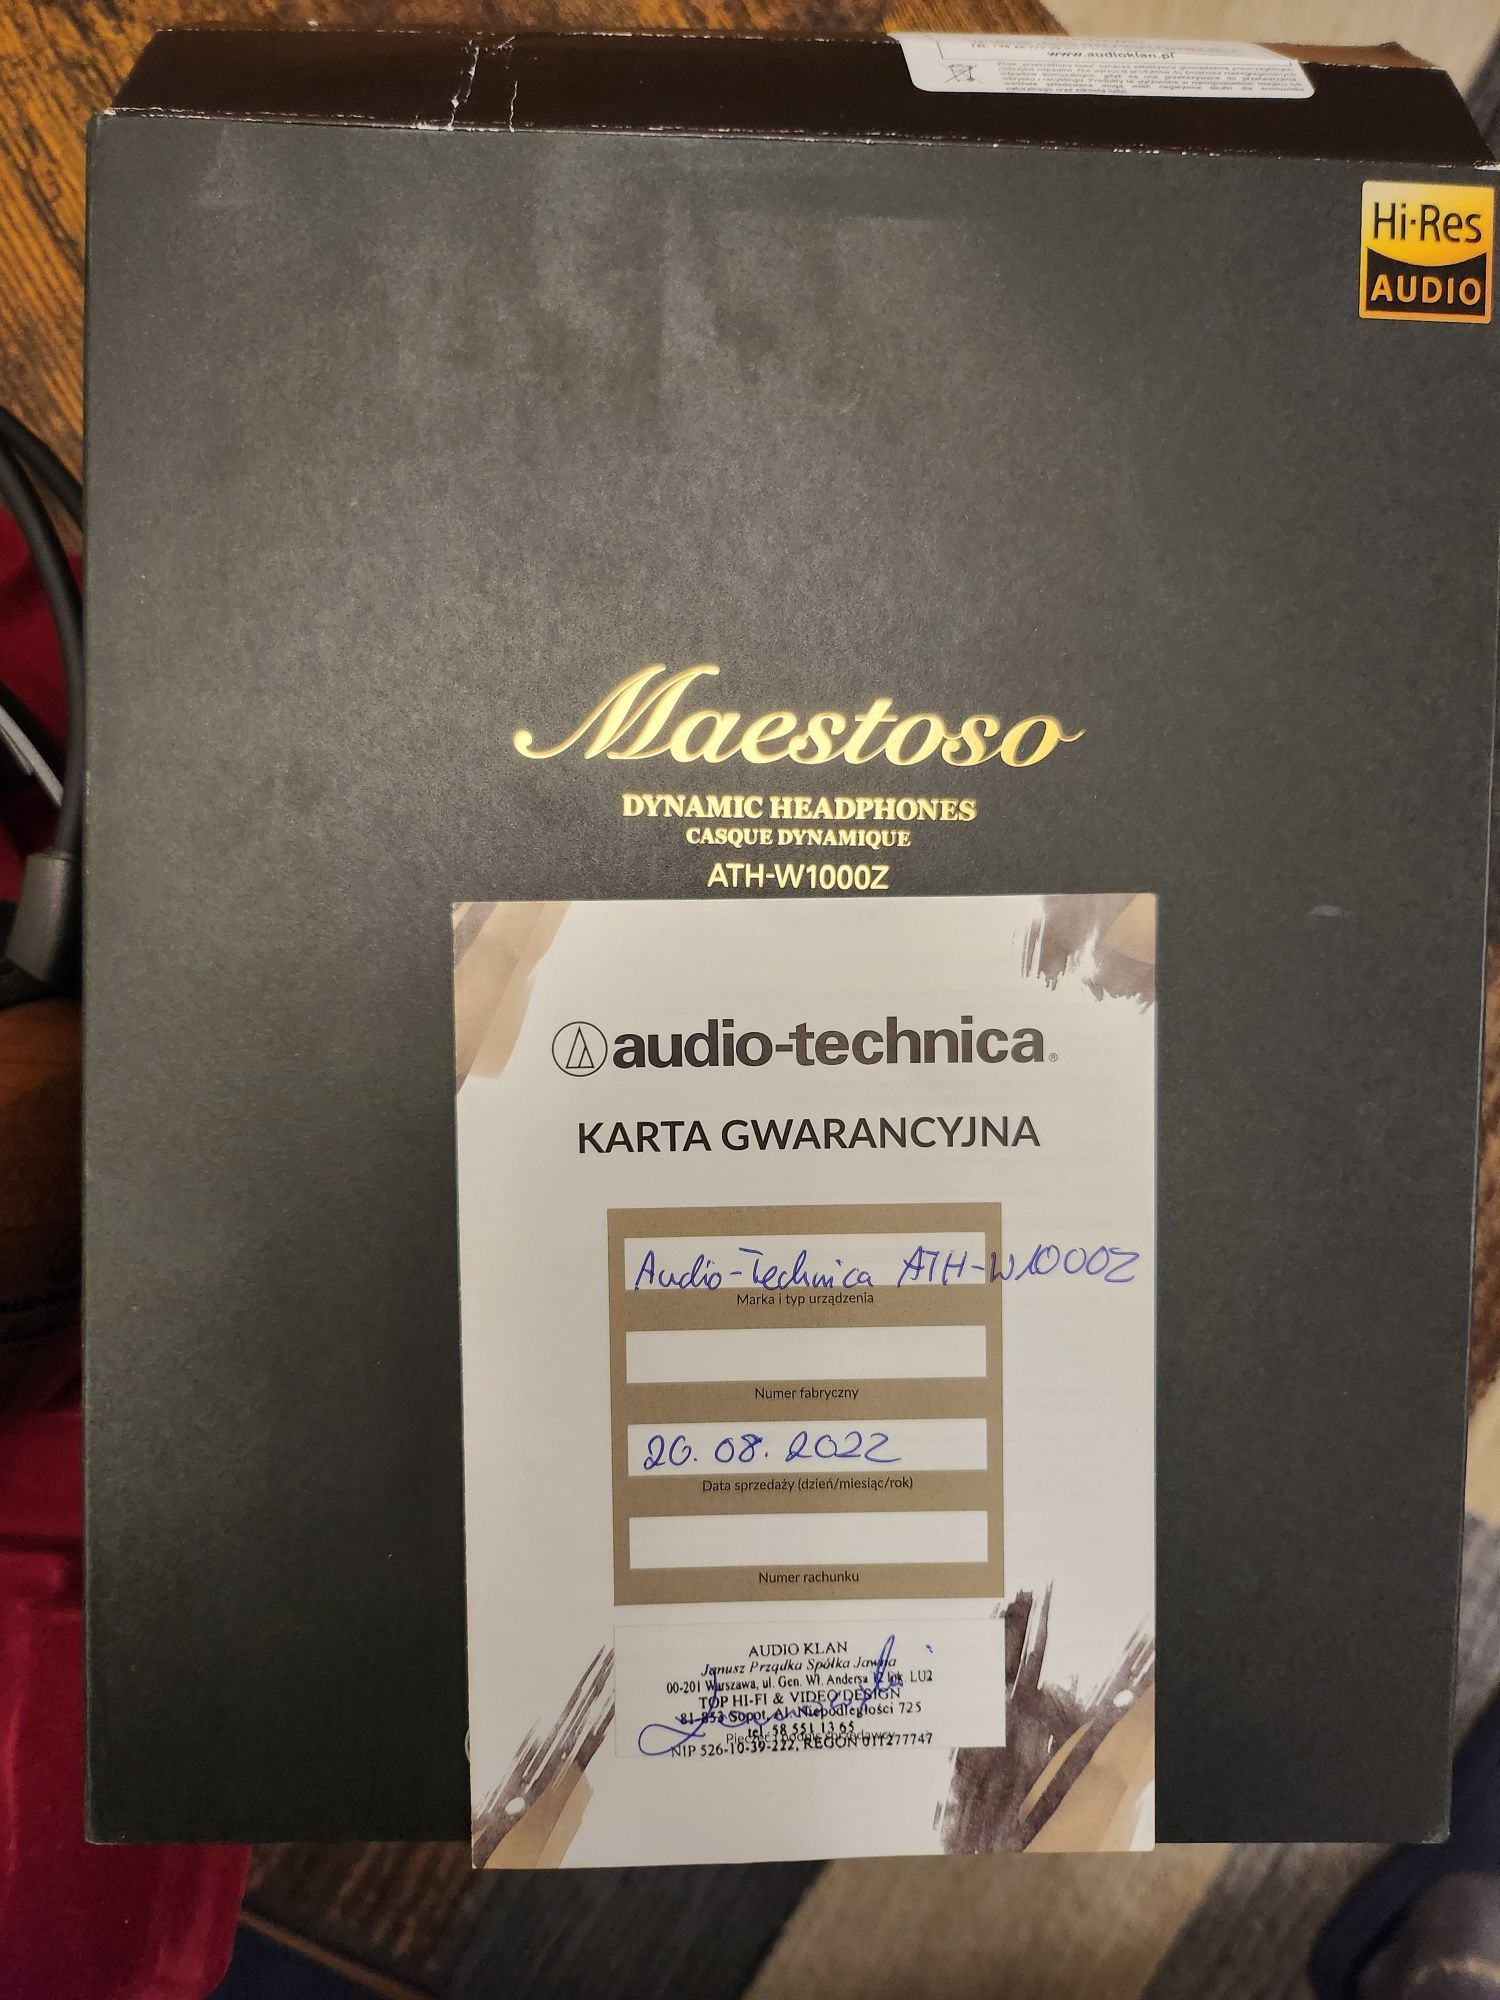 Słuchawki Audio-Technica ATH-W1000Z Maestoso.